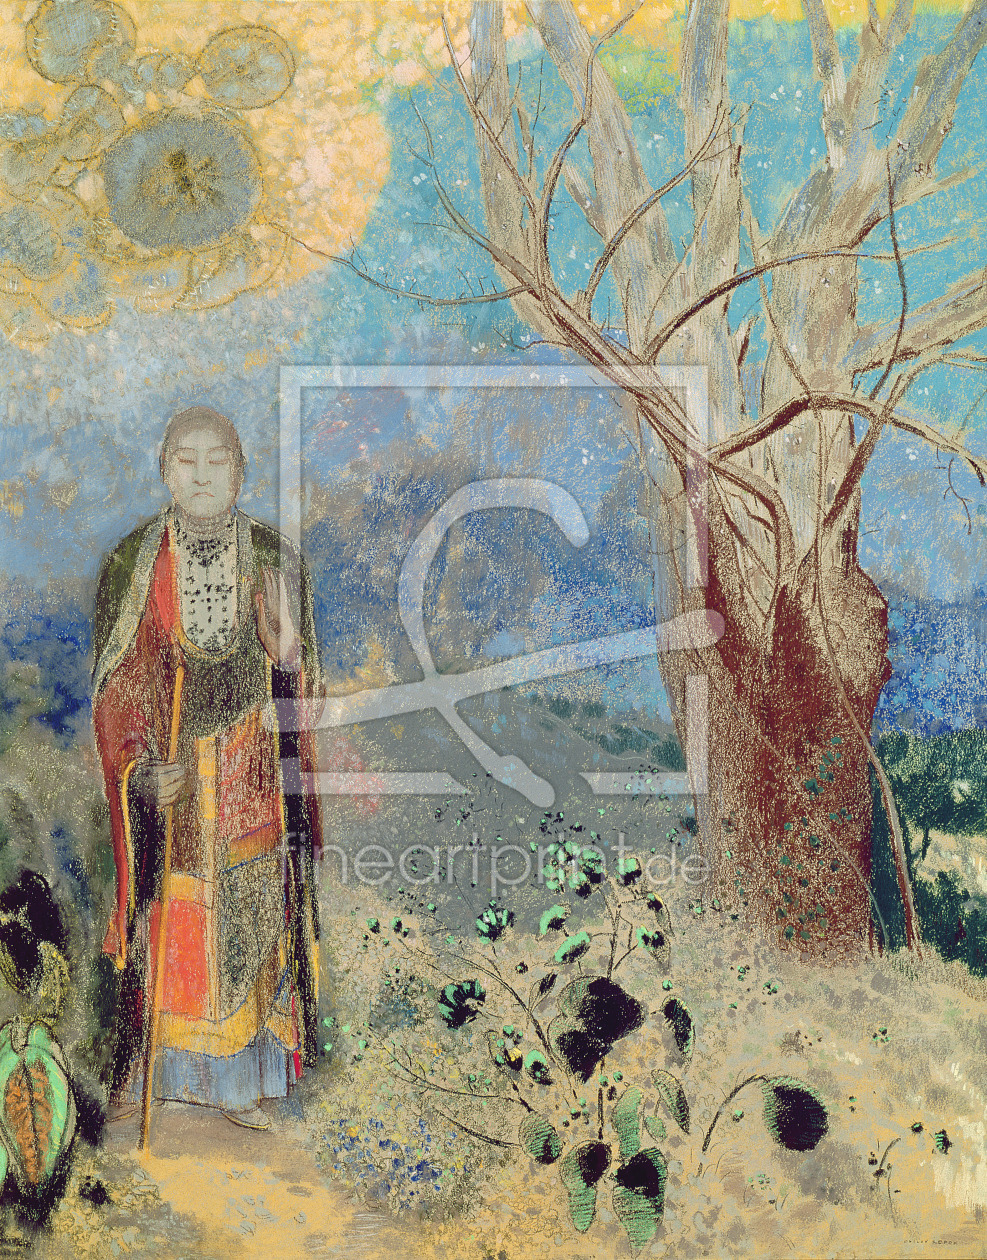 Bild-Nr.: 31001015 The Buddha, c.1905 erstellt von Redon, Odilon